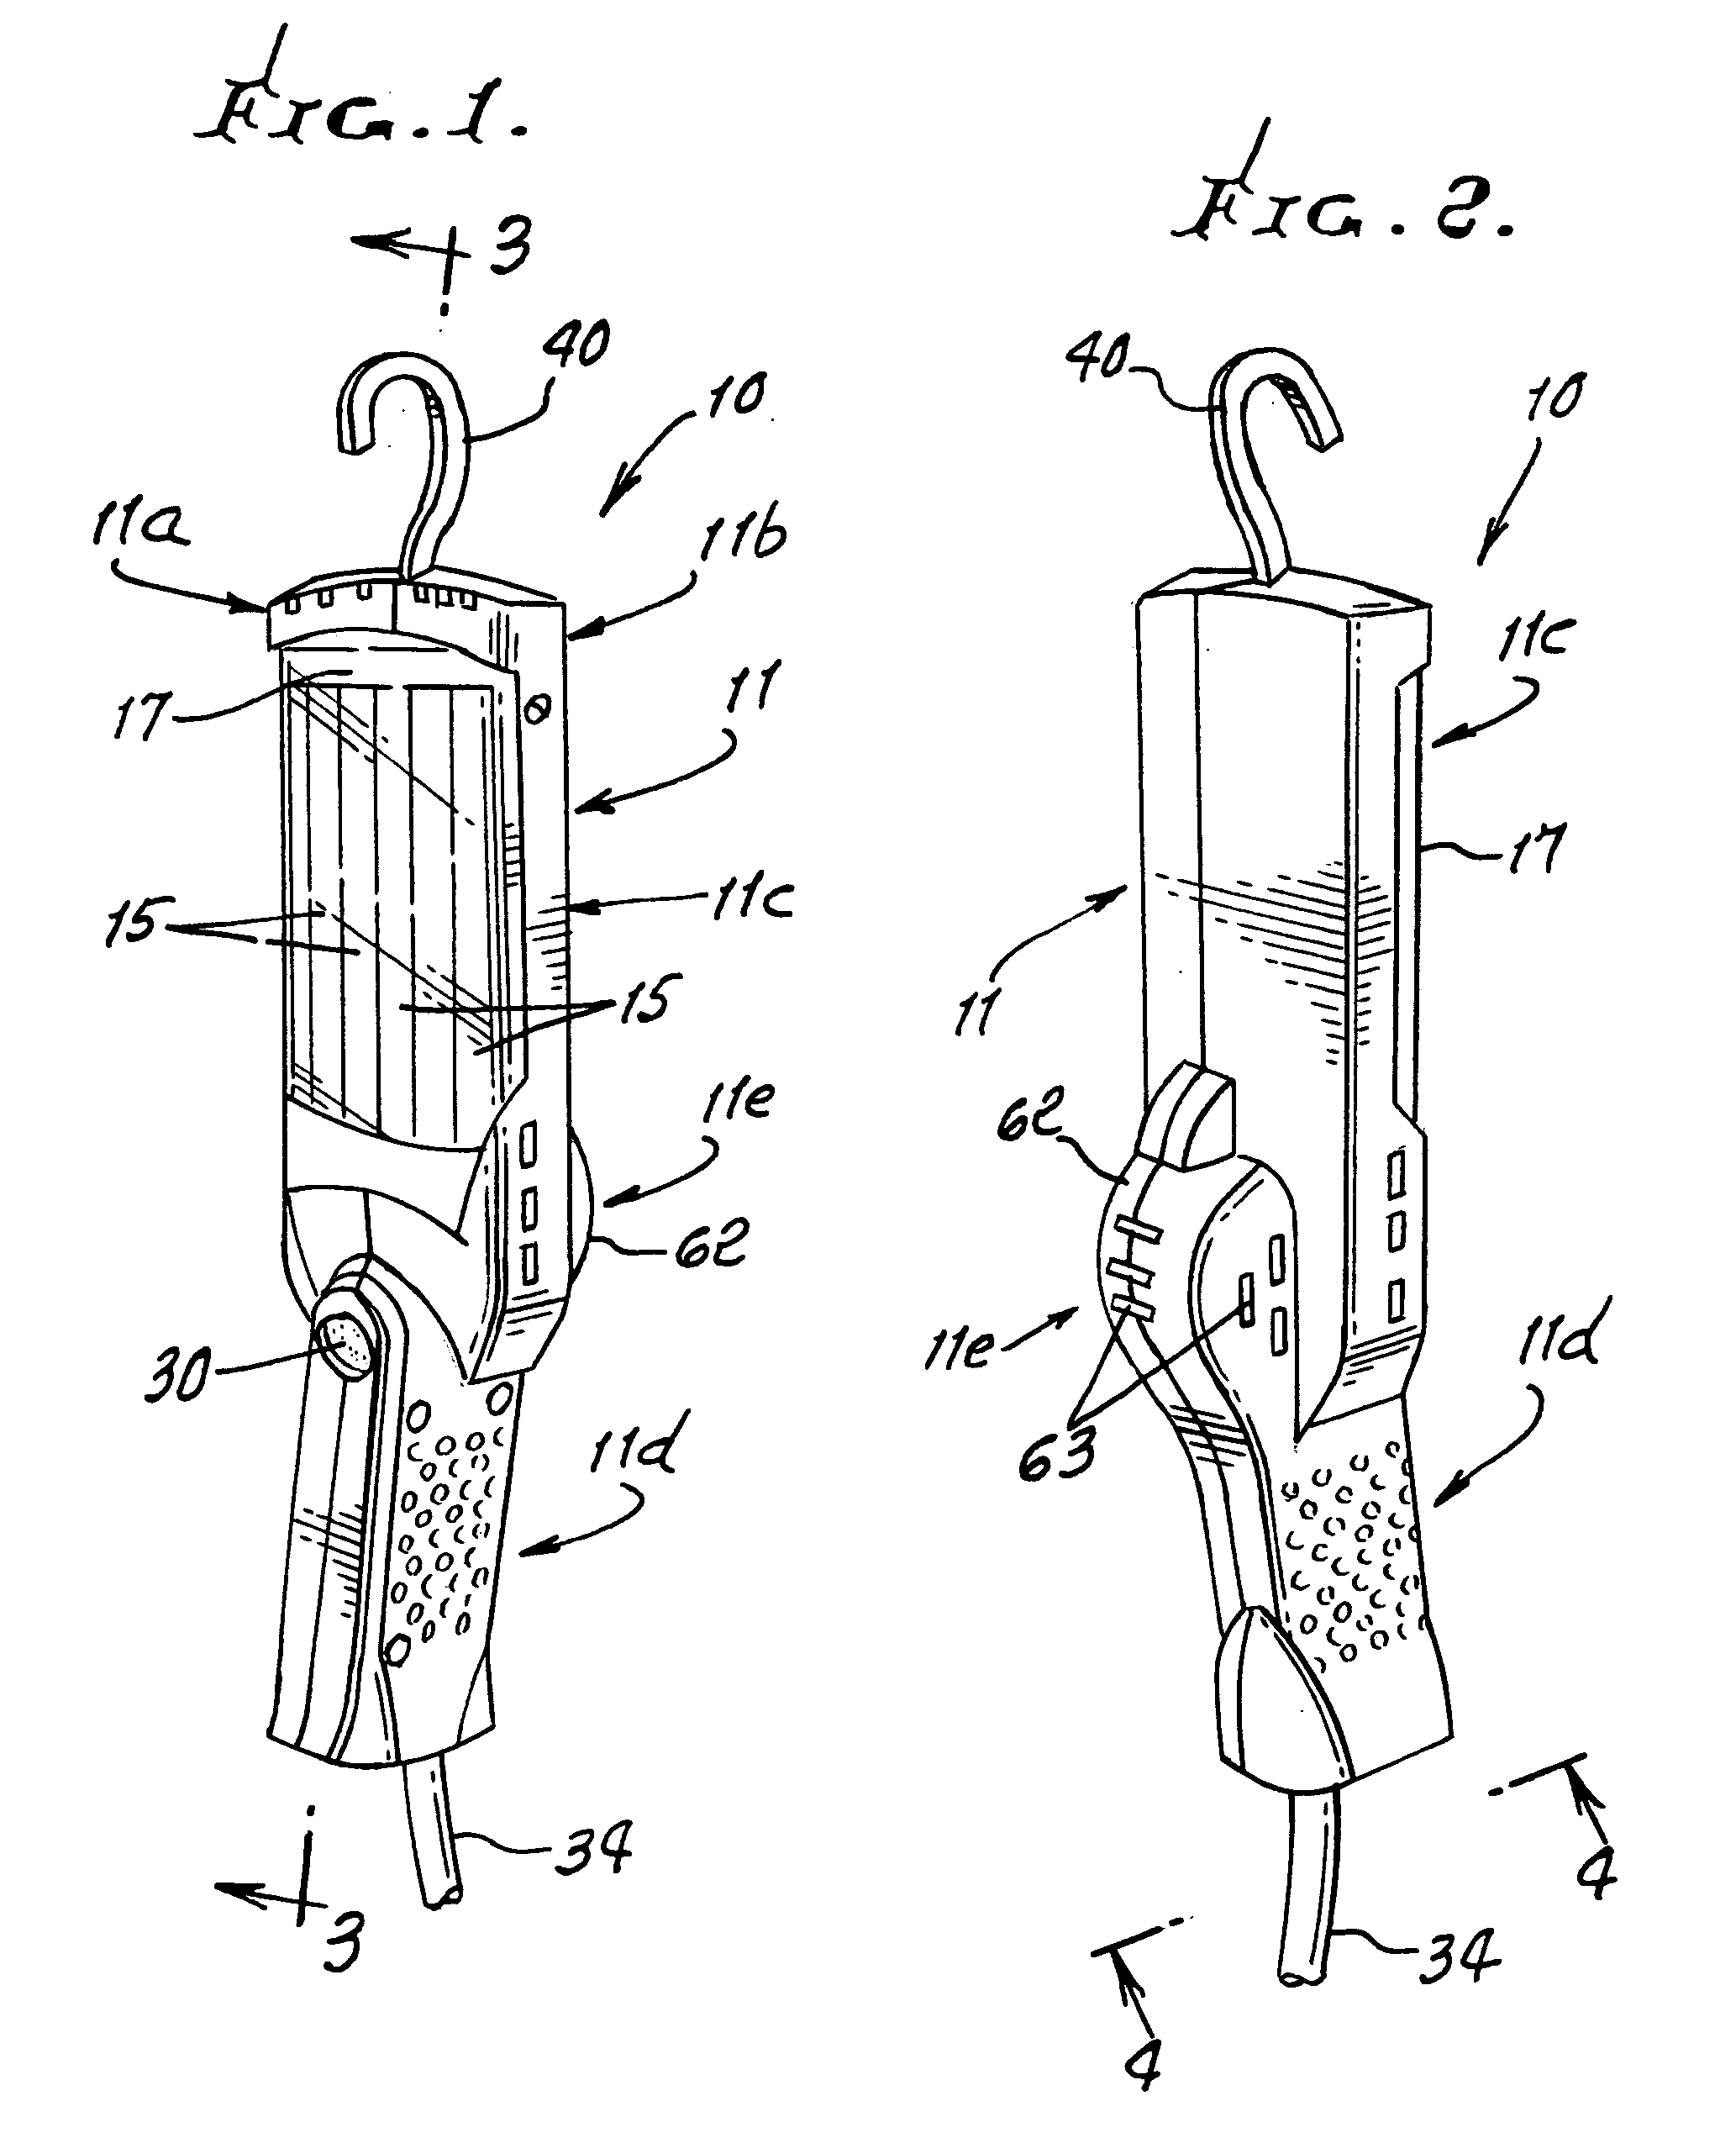 Drop-light apparatus